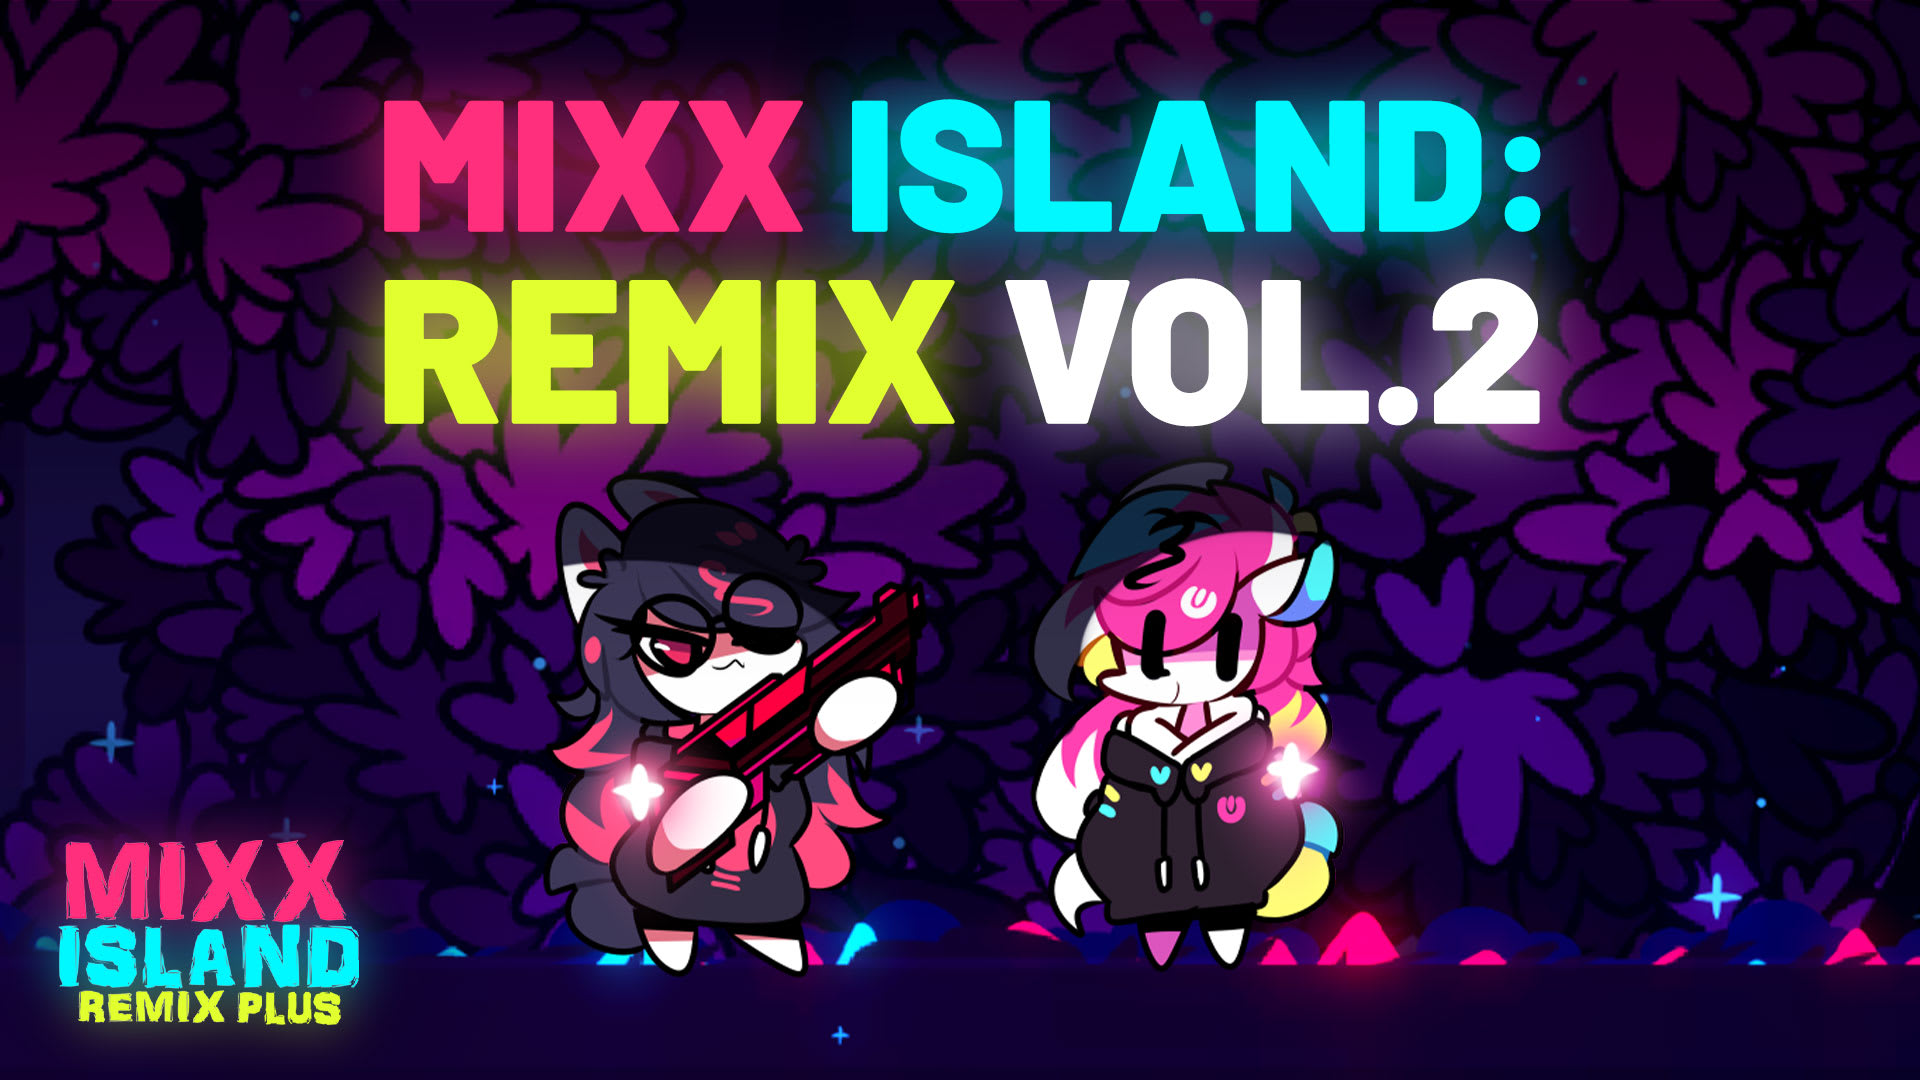 Mixx Island Remix Vol. 2